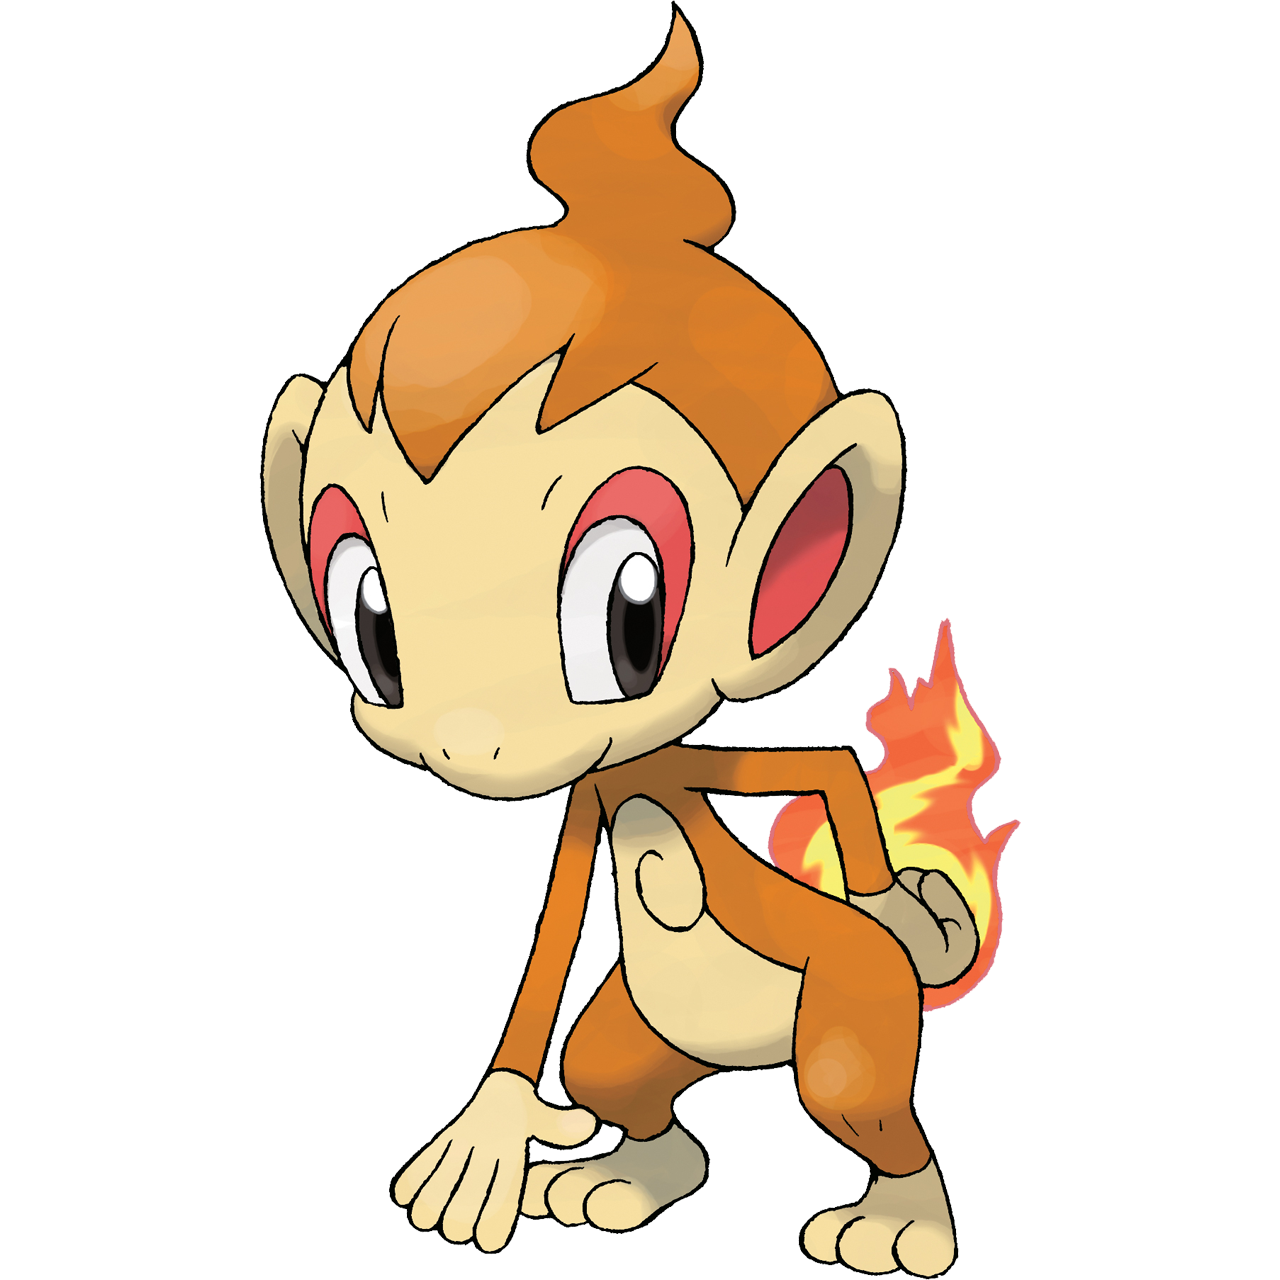 小火焰猴